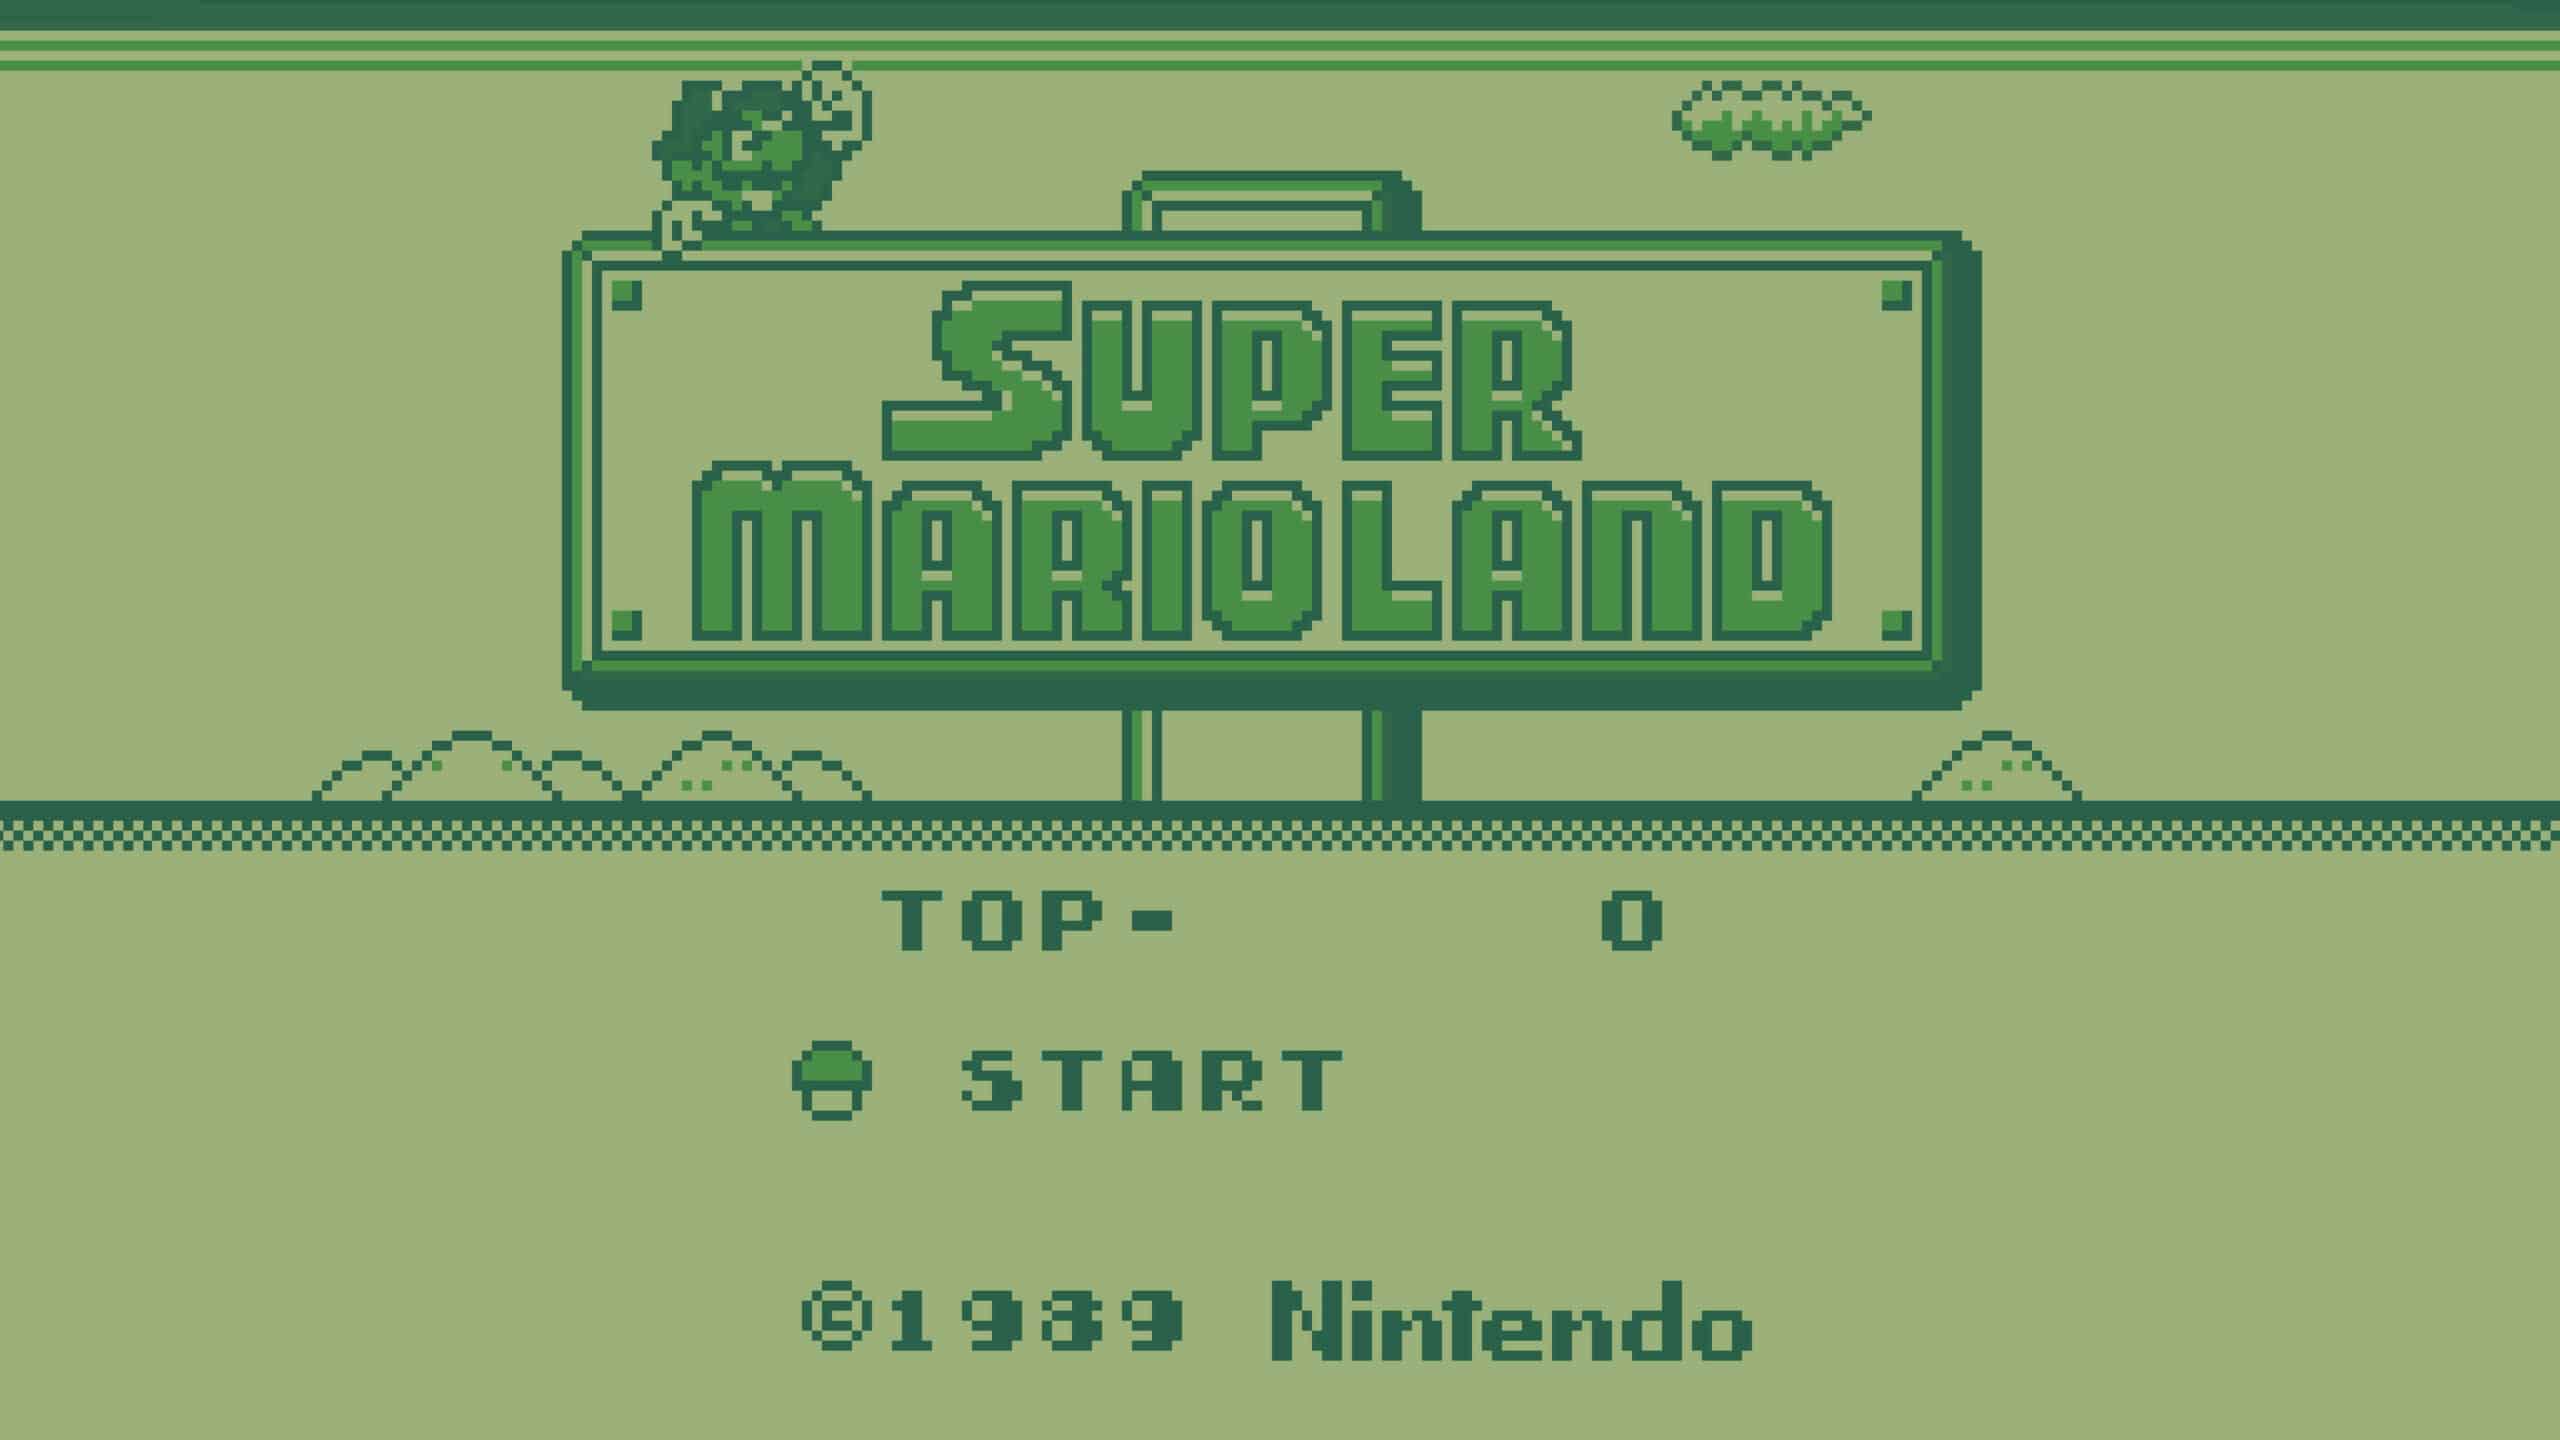 Super-Mario-Land-Game-Boy-Screenshot-UHD-4K-Wallpaper-Pixelz.jpg